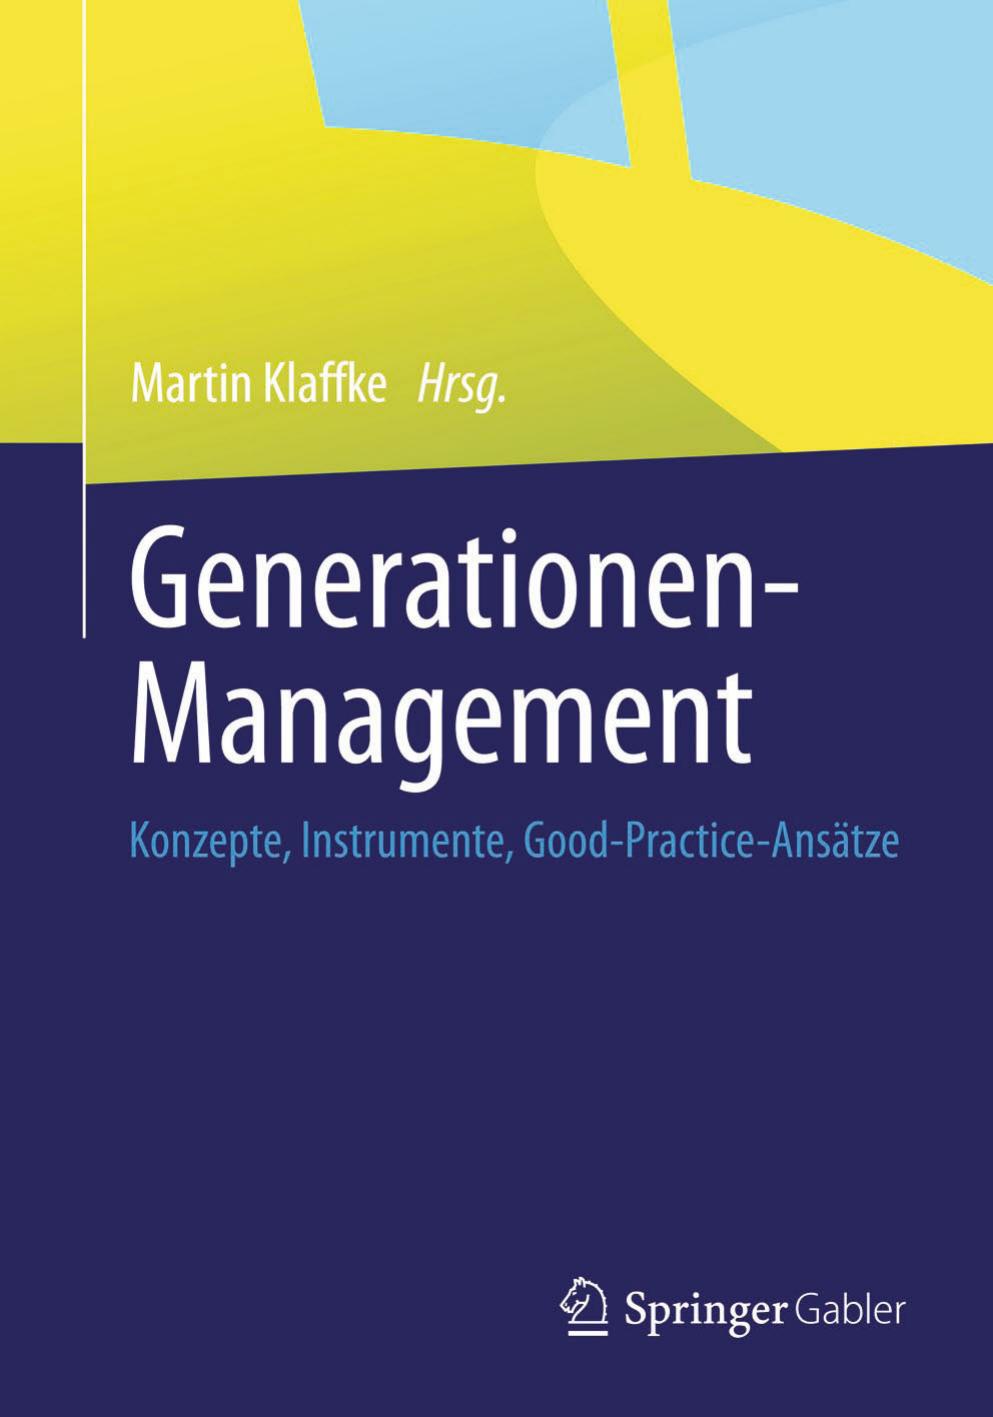 Generationen-Management: Konzepte, Instrumente, Good-Practice-Ansätze